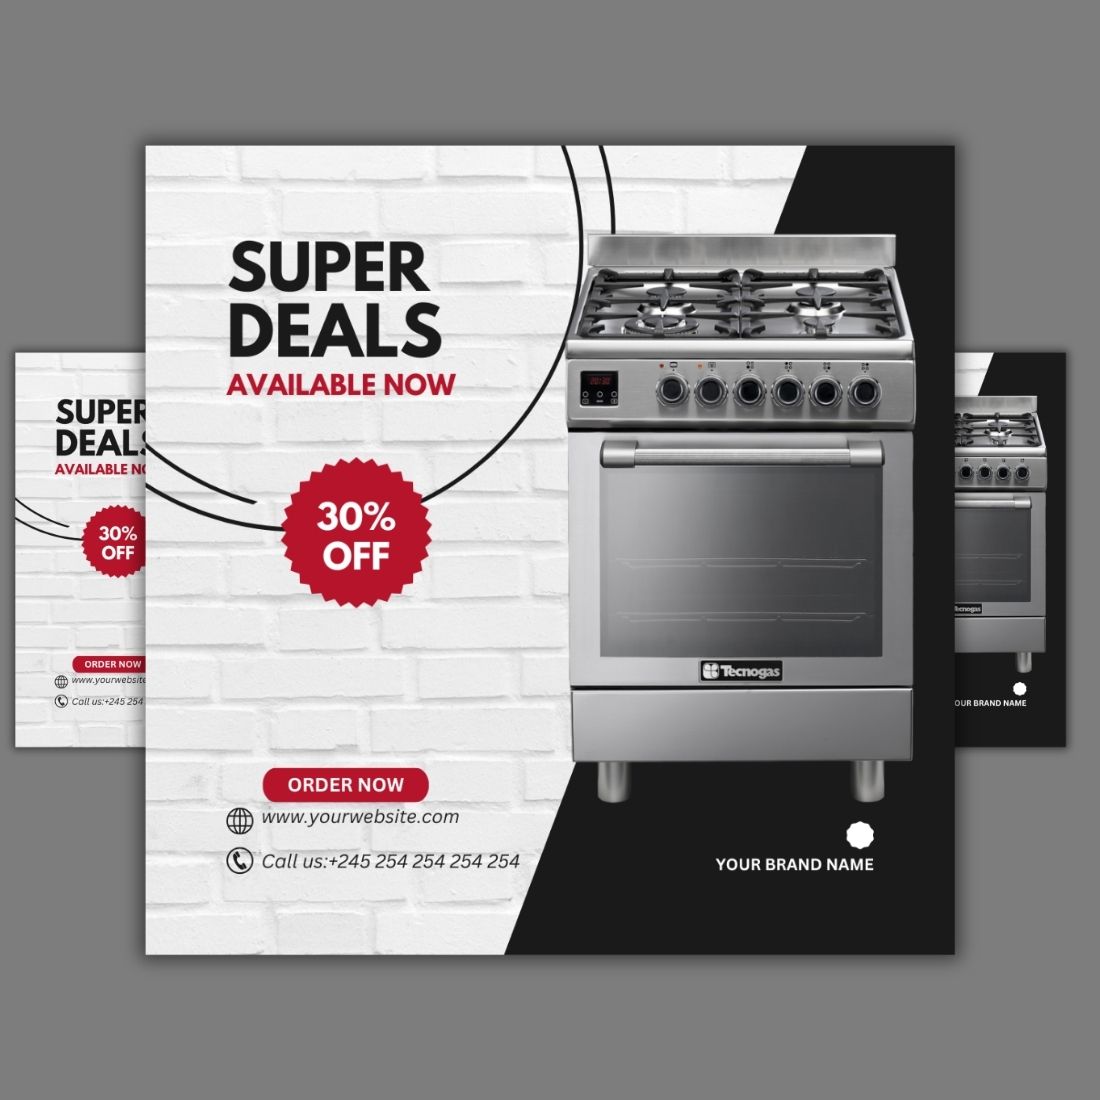 1 Instagram sized Canva Cooker Super Deals Offer Design Template Bundle – $4 preview image.